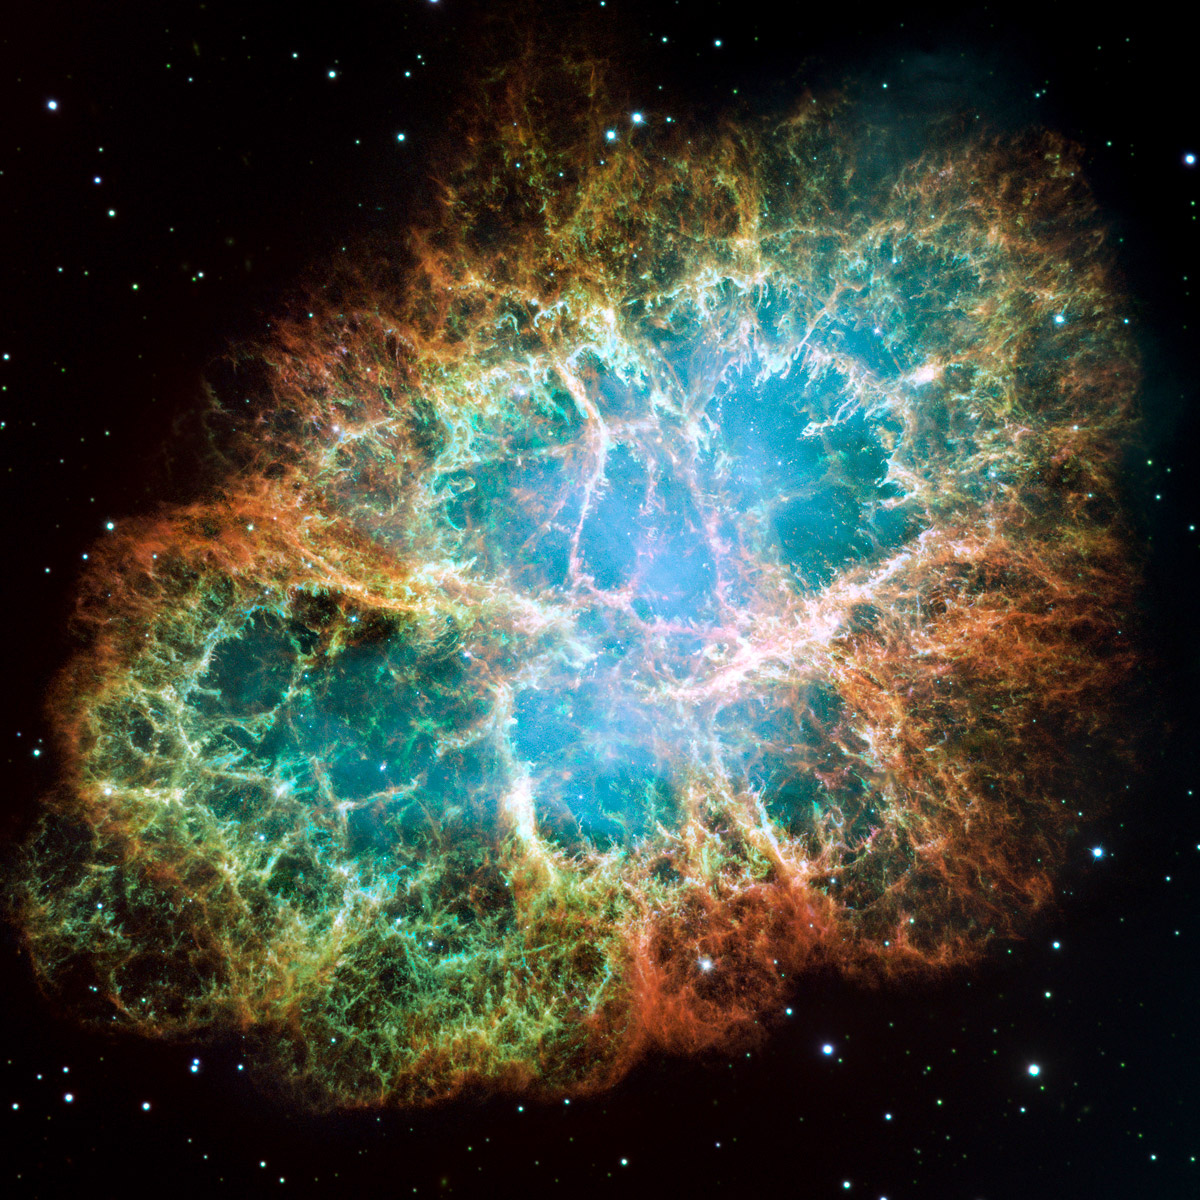 SnĂ­mek KrabĂ­ mlhoviny (M1, NGC 1952 ÄŤi Taurus A) se rovnÄ›Ĺľ dostal do â€žTop 10â€ł. EmisnĂ­ mlhovina v souhvÄ›zdĂ­ BĂ˝ka je pozĹŻstatkem supernovy SN 1054, kterou poprvĂ© zaznamenali ÄŤĂ­nĹˇtĂ­ astronomovĂ© v roce, kterĂ˝ se otiskl i do jejĂ­ho (